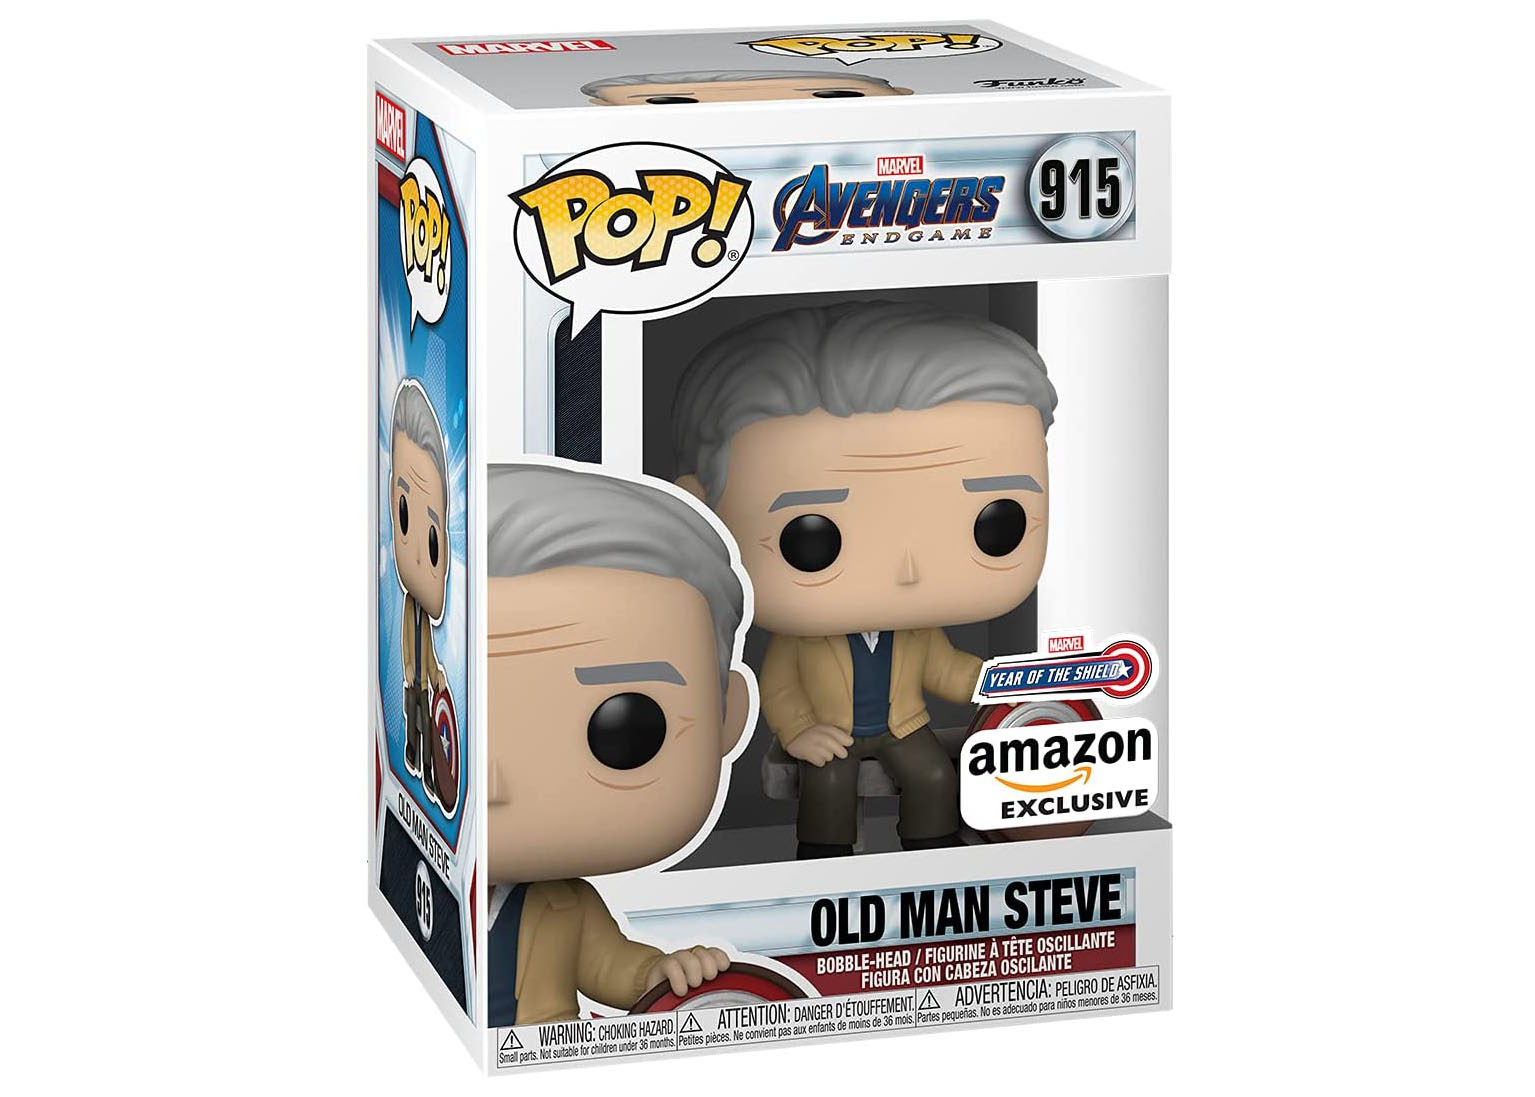 Old Man Steve Rogers 915 Avengers EndGame Marvel Year Of The Shield Funko Pop 